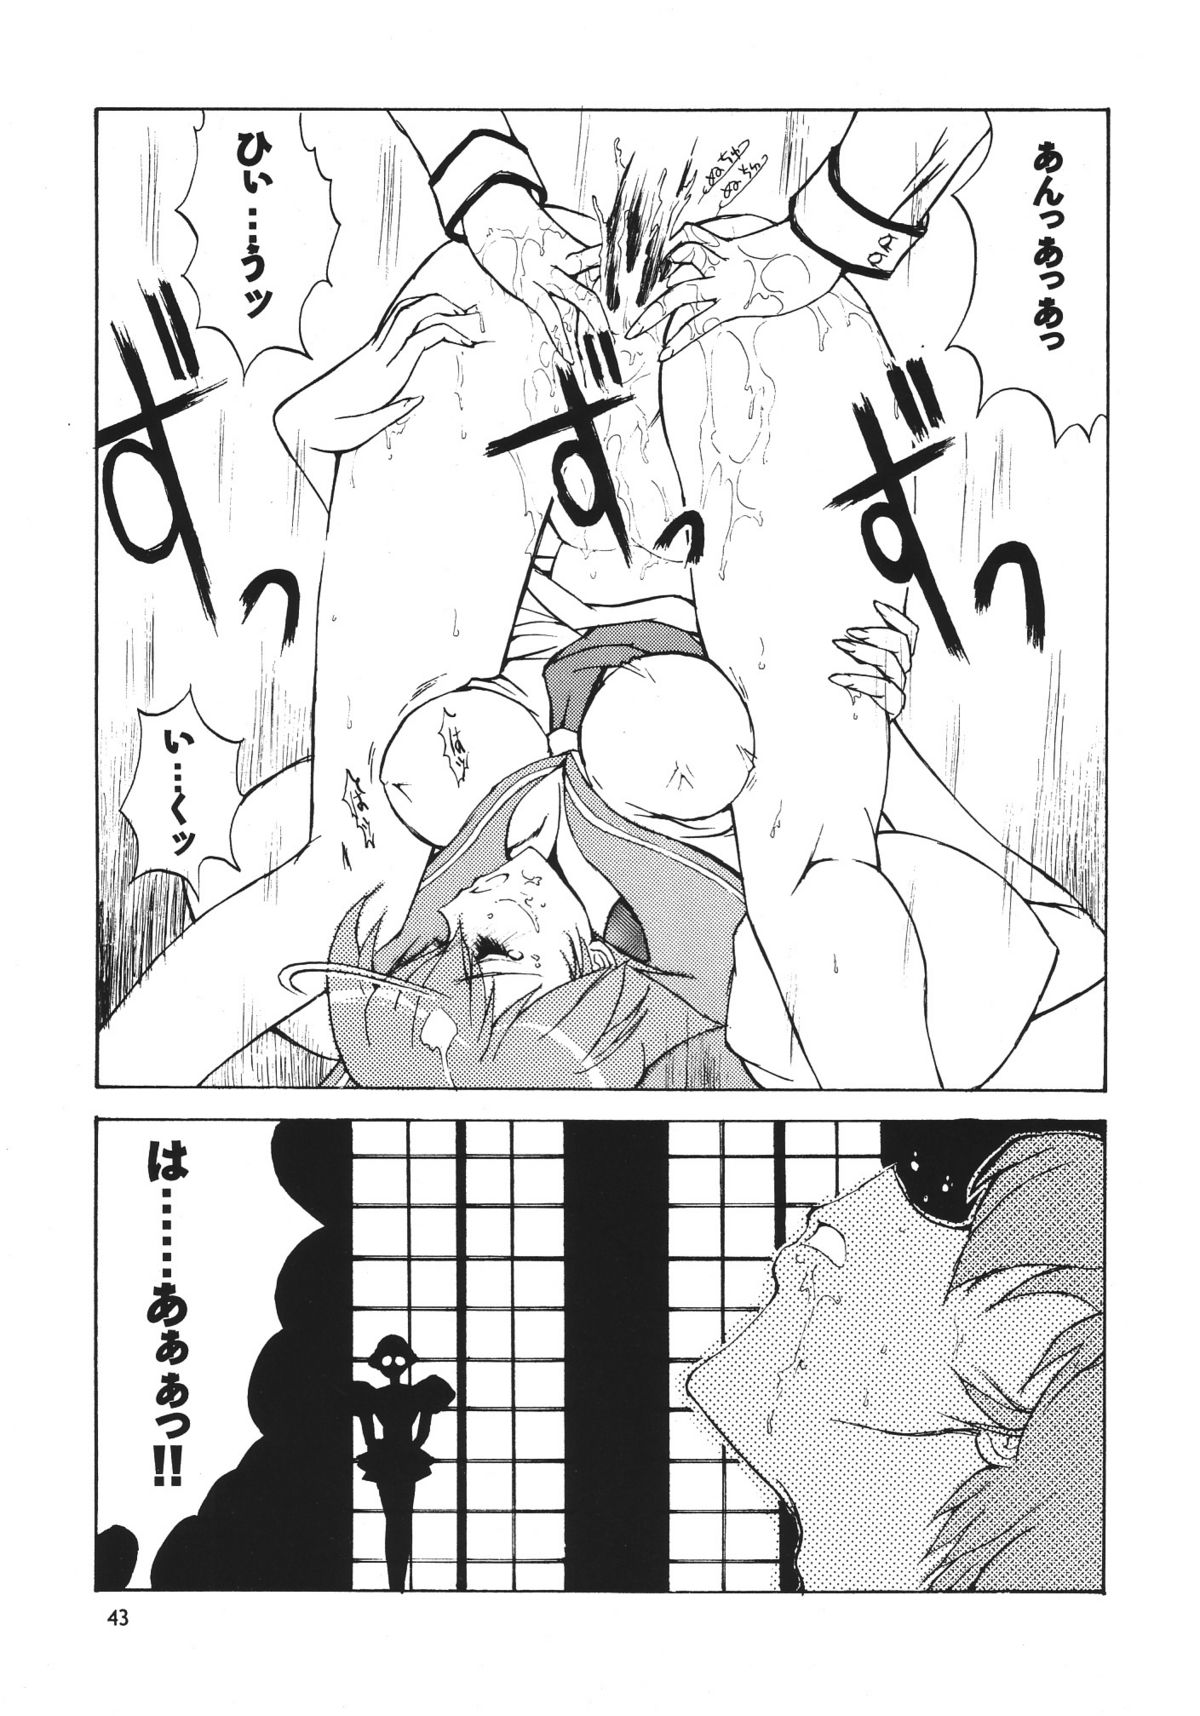 [Seishun No Nigirikobushi!] Favorite Visions 2 (Sailor Moon, AIKa) page 45 full